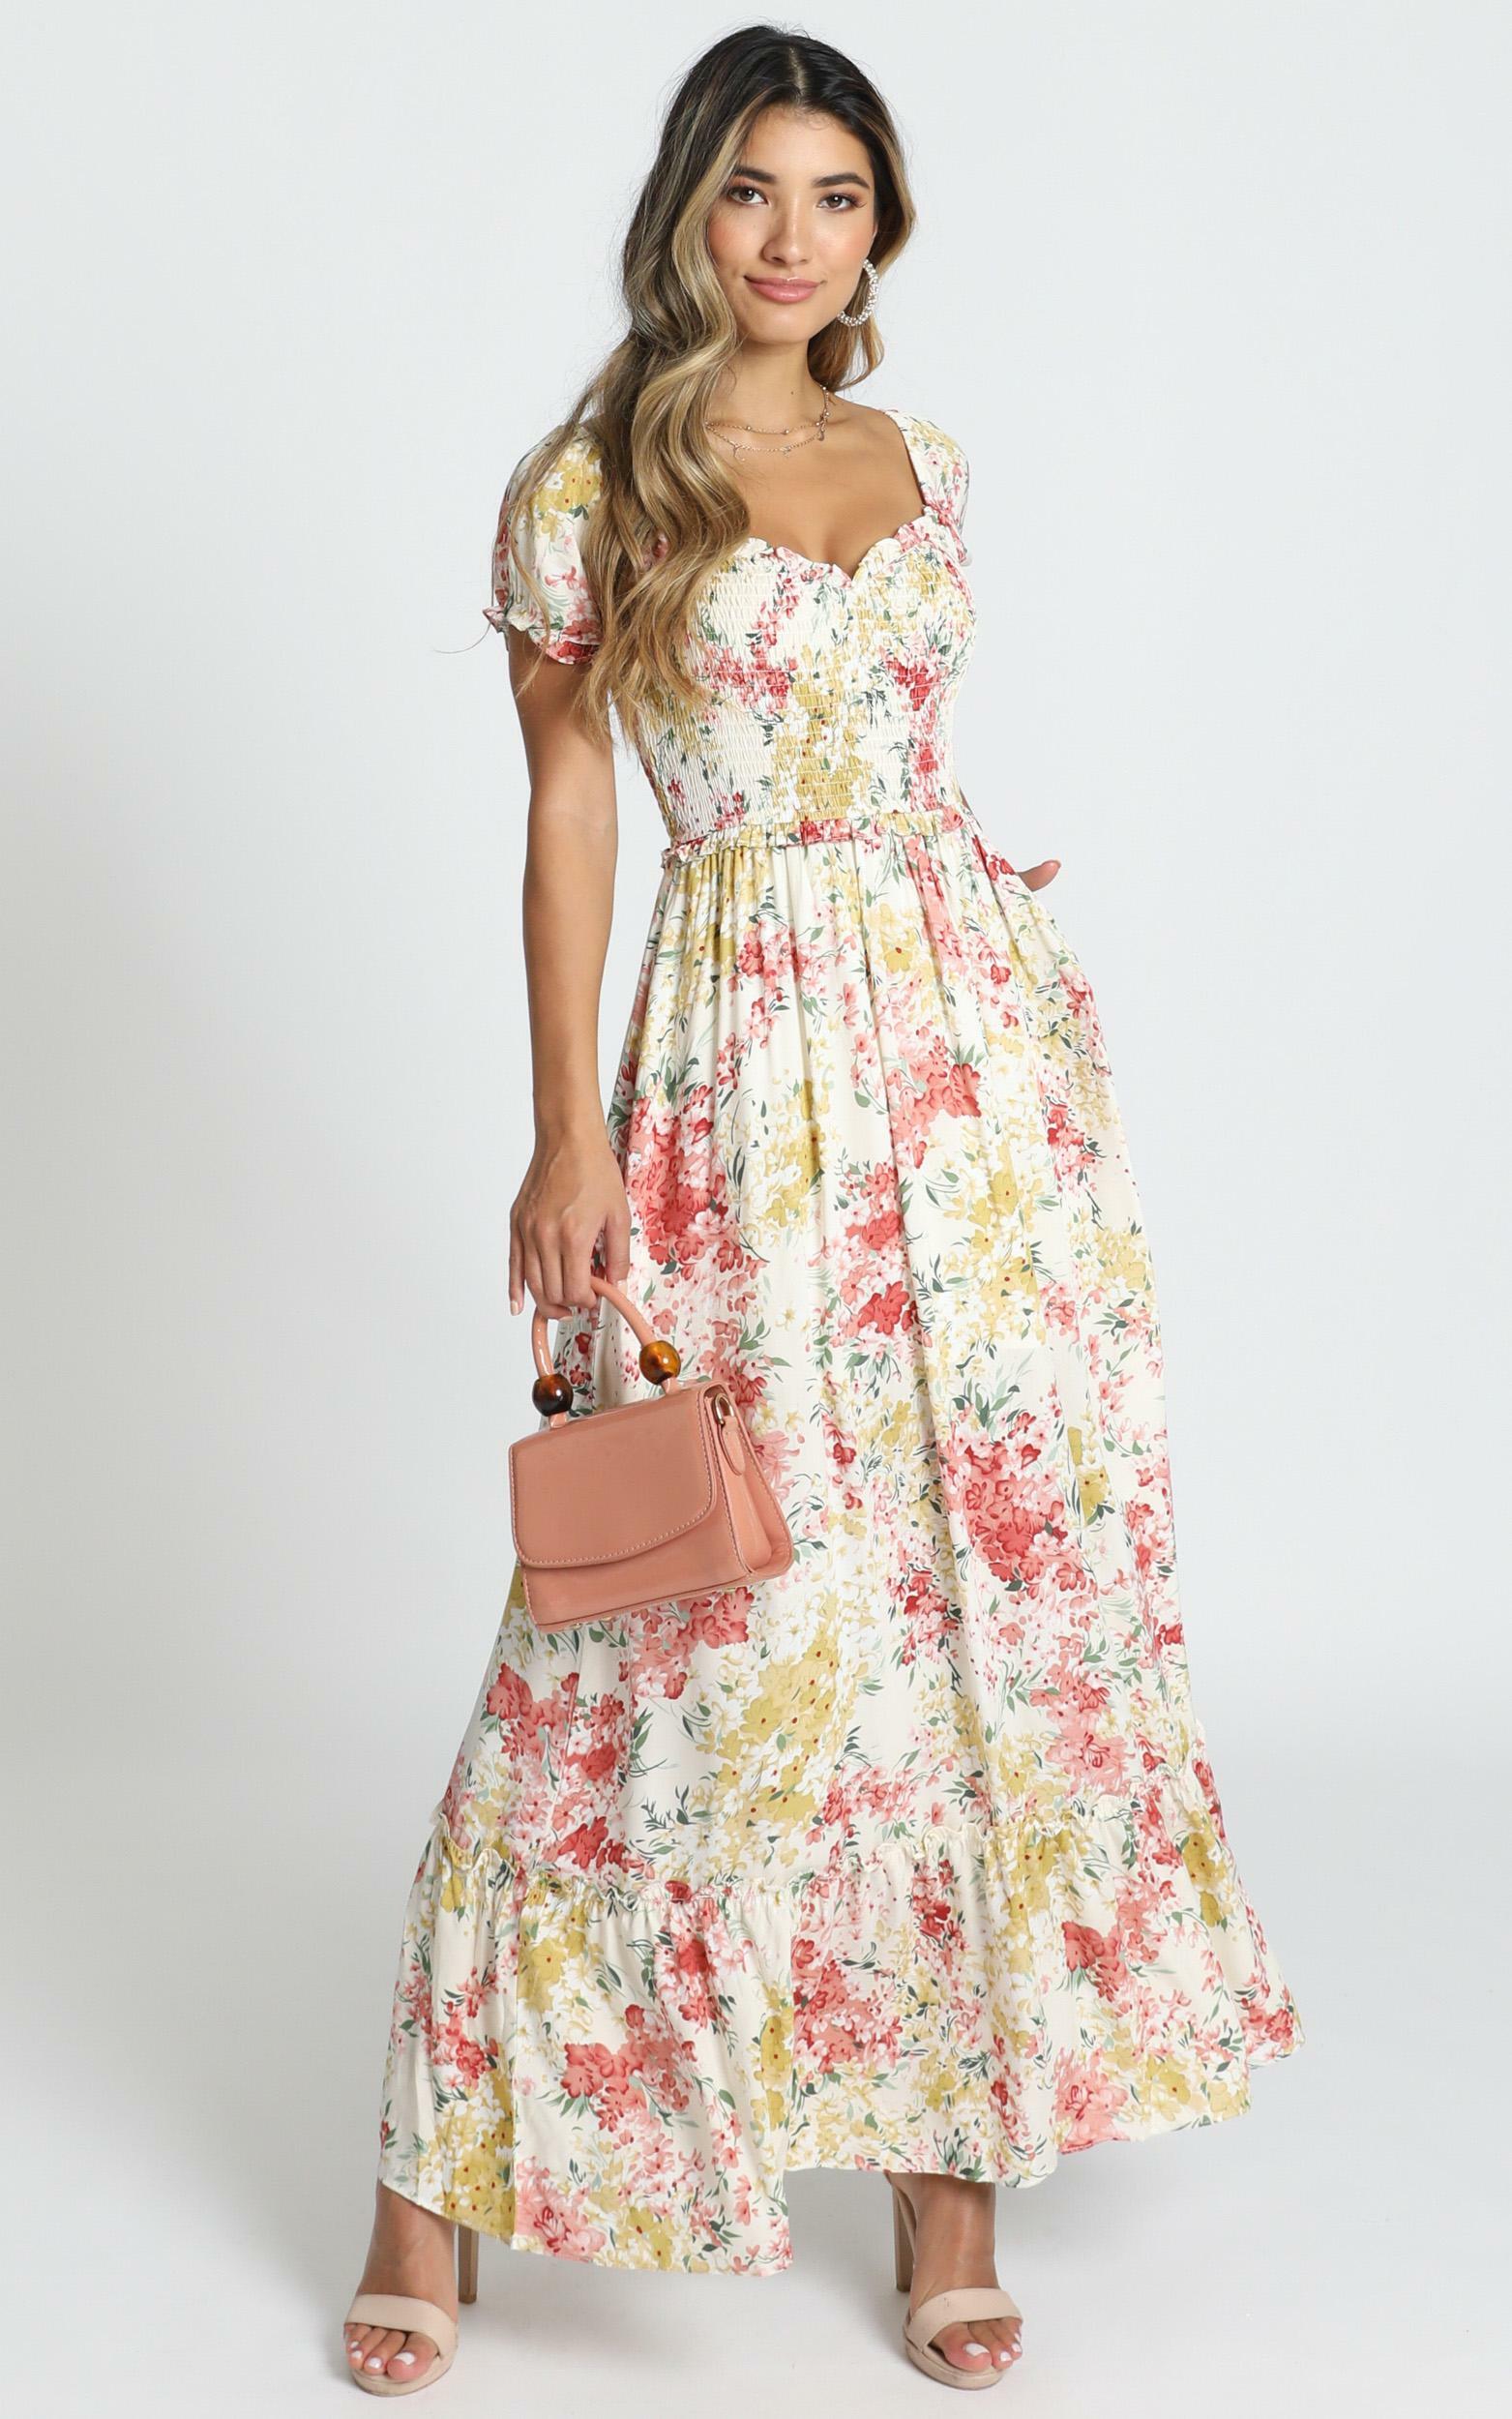 Sonia Dress in Multi Floral | Showpo USA